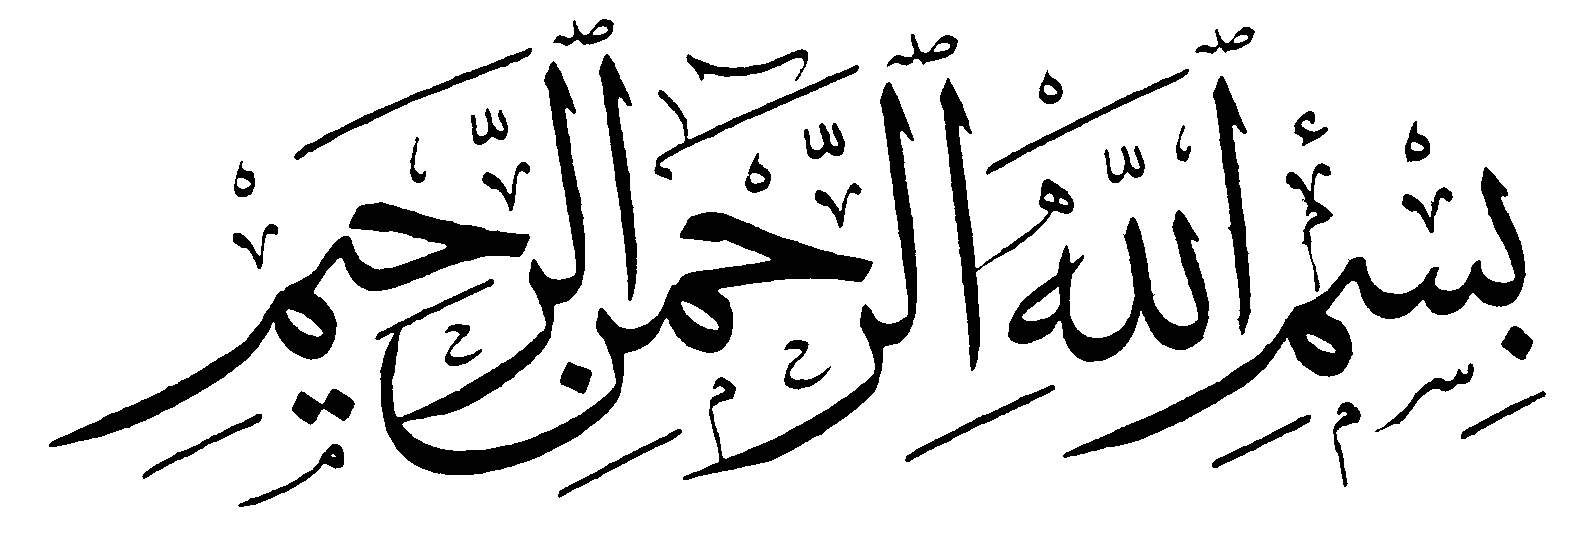 Kaligrafi dengan Tulisan  dan Background Hitam  Putih  Alif 